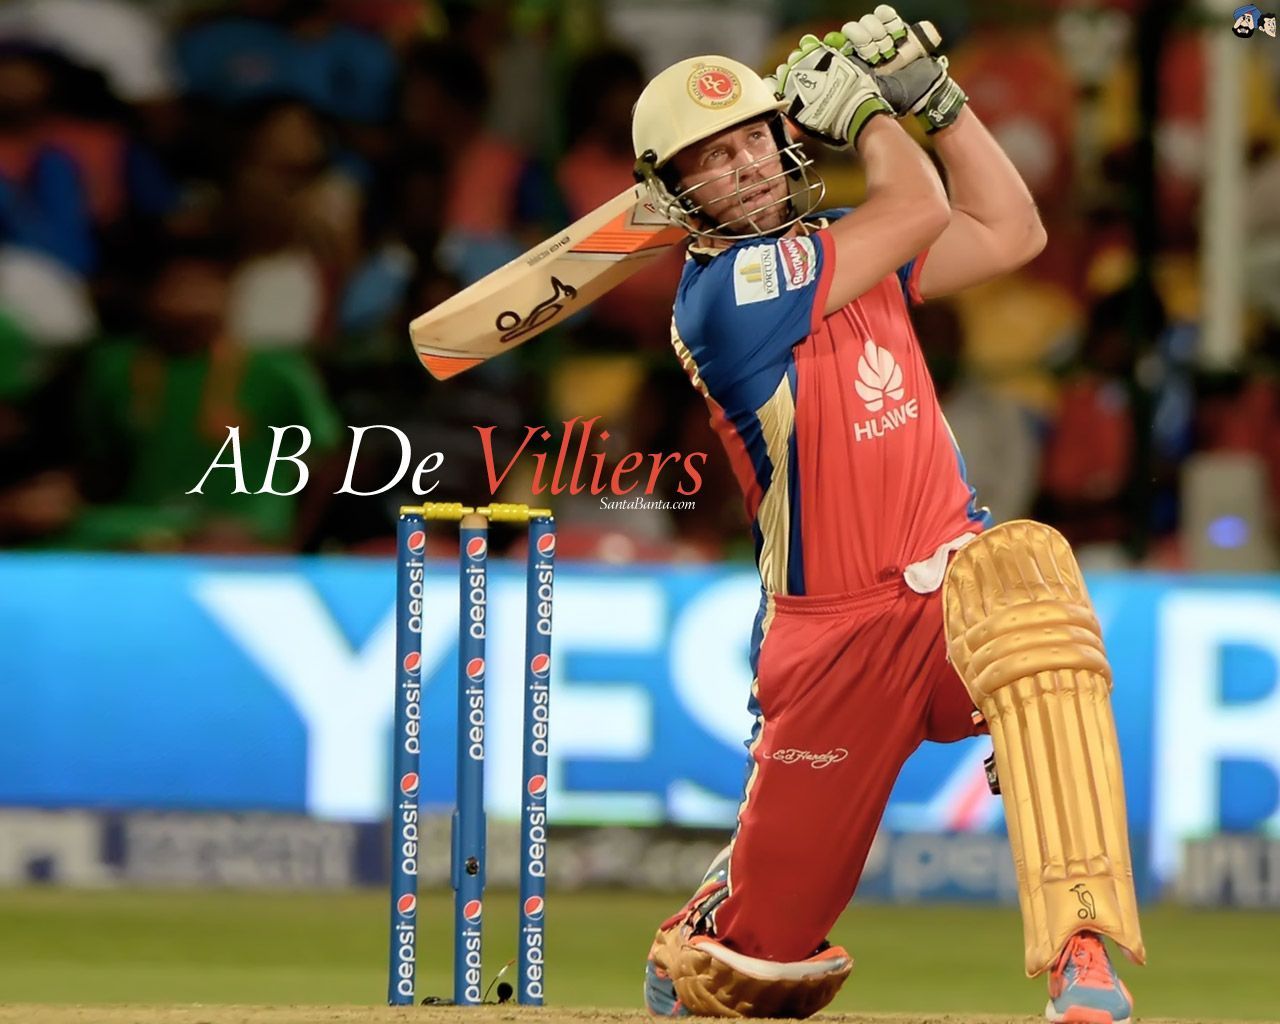 Mr. A famous South African Cricketer De Devilliers - Ab de villiers, Abs, Sports celebrities